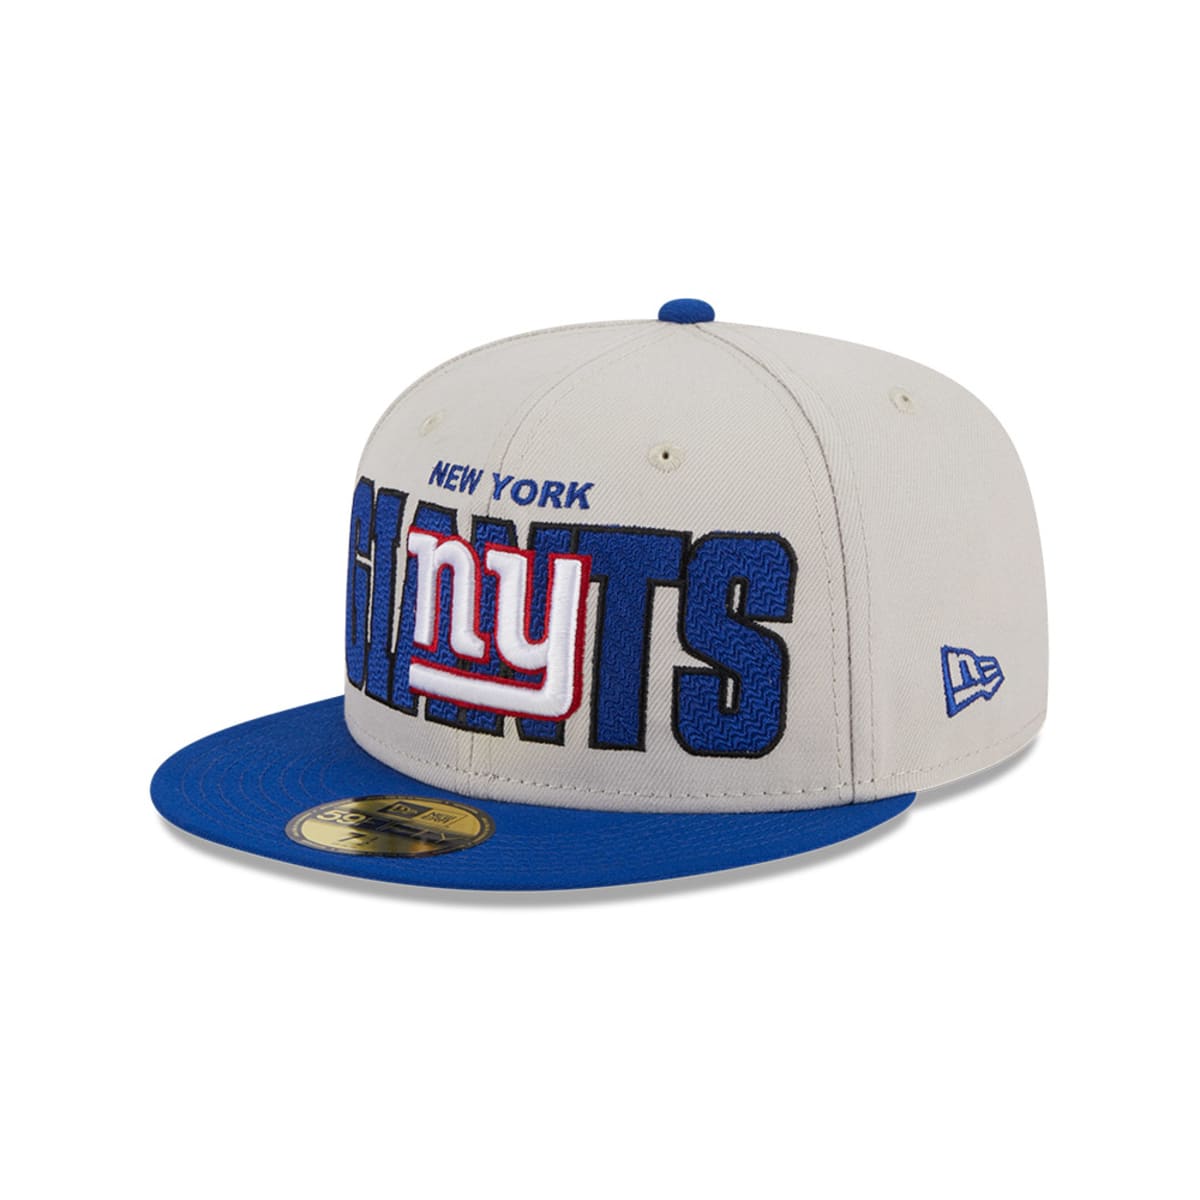 New York Giants Fan Caps & Hats for sale